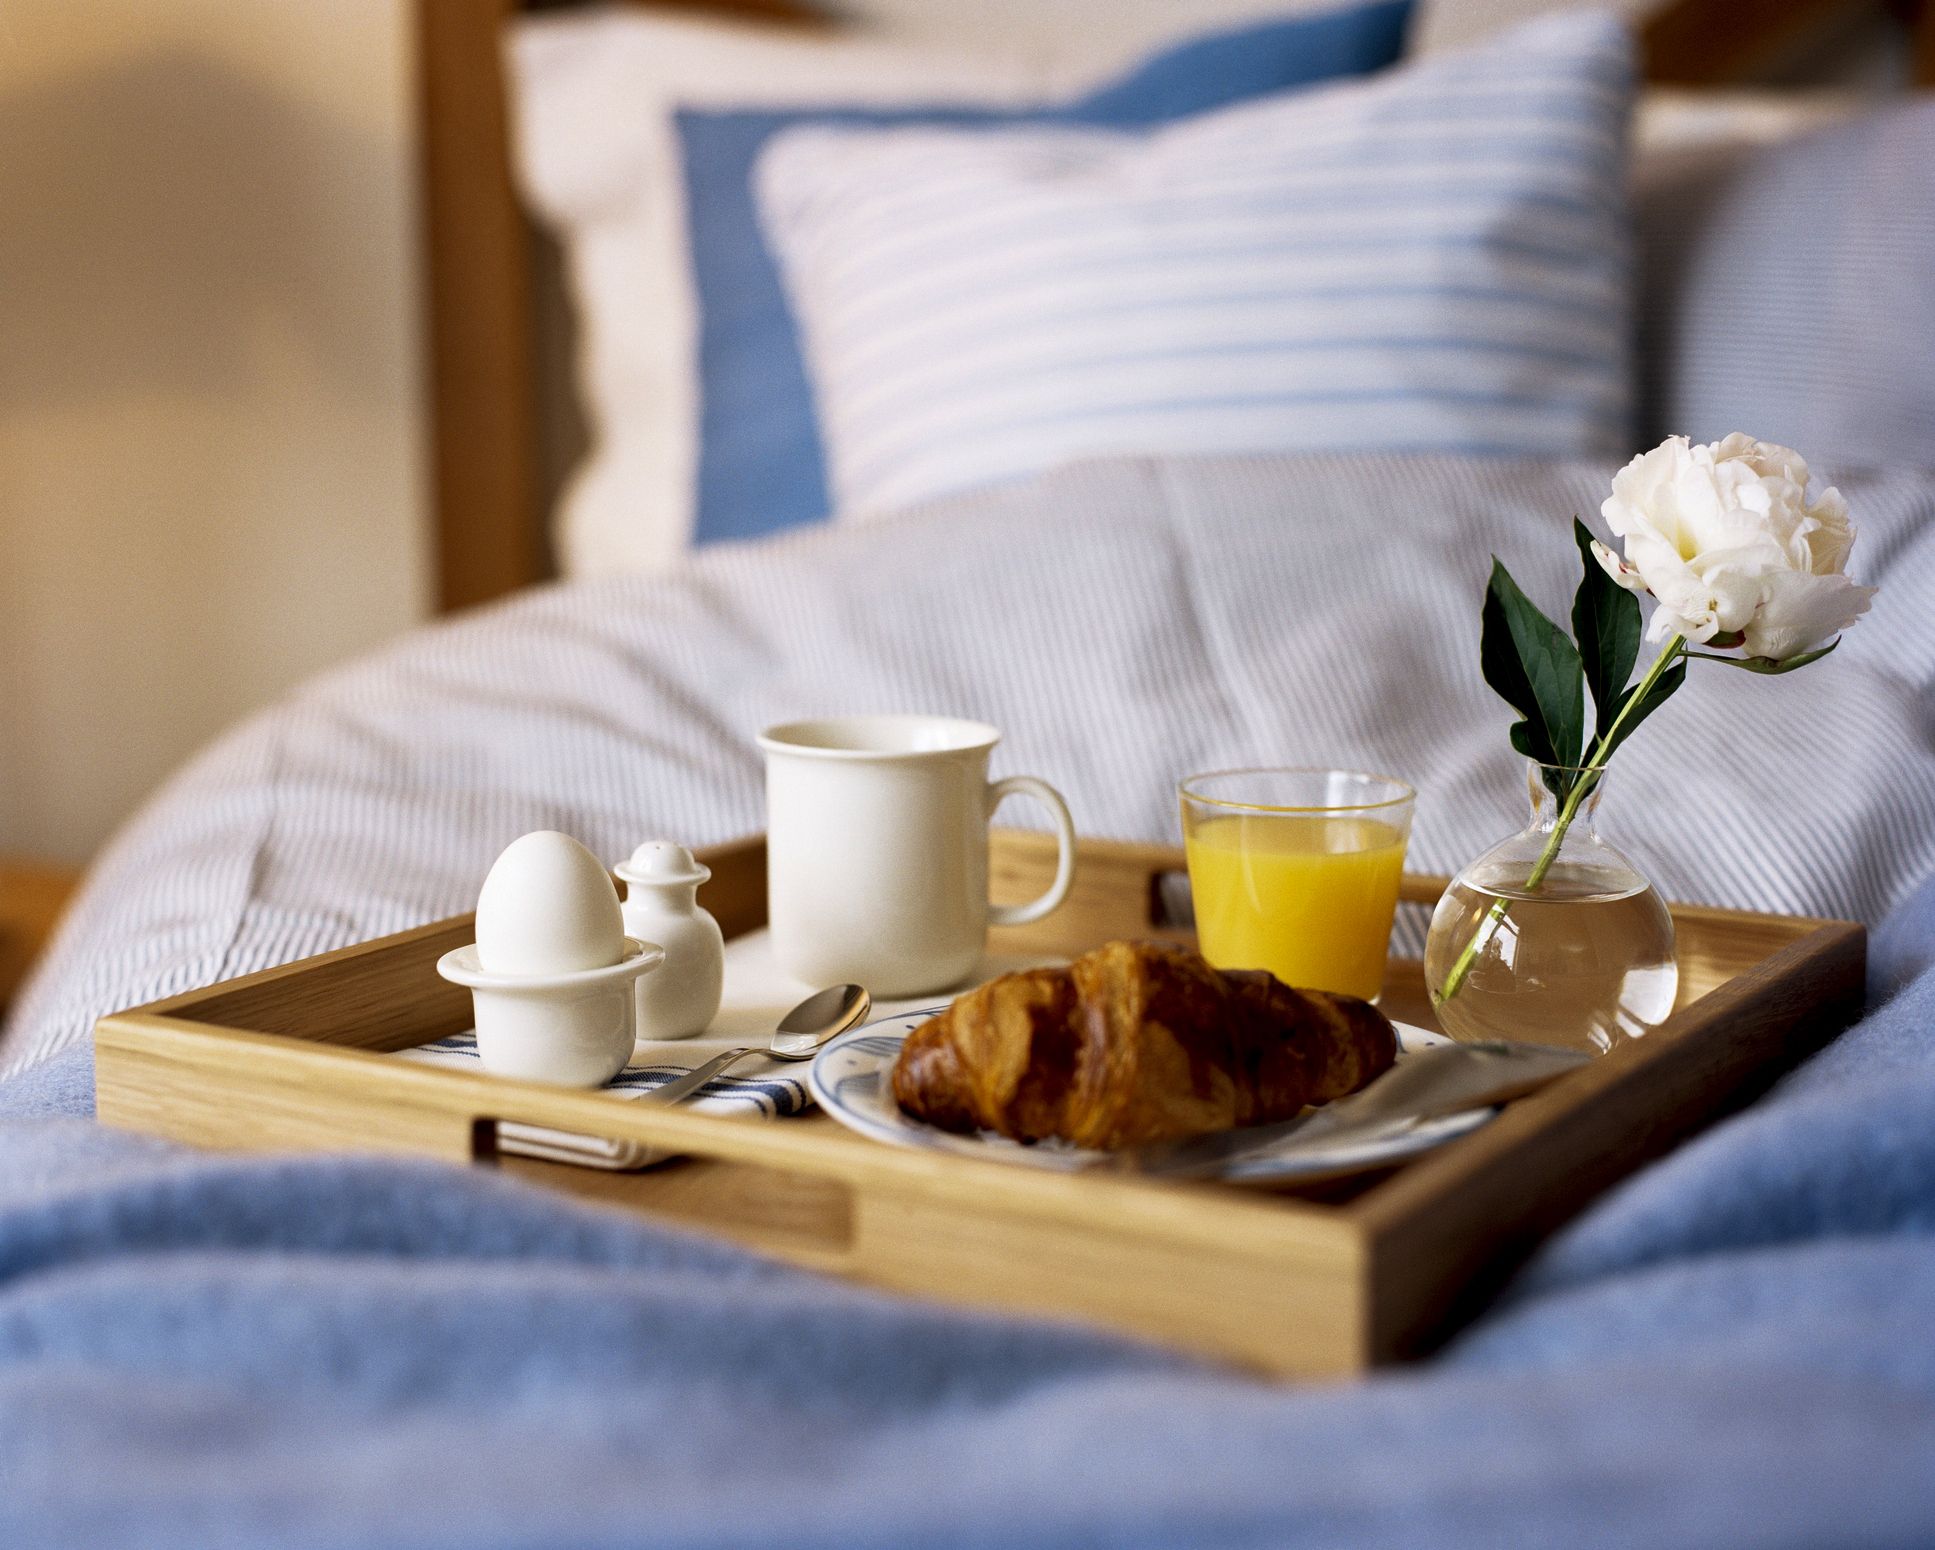 Принести завтрак в постель. Кофе в постель. Завтрак в постель. Романтический завтрак в постель. Романтическое утро.